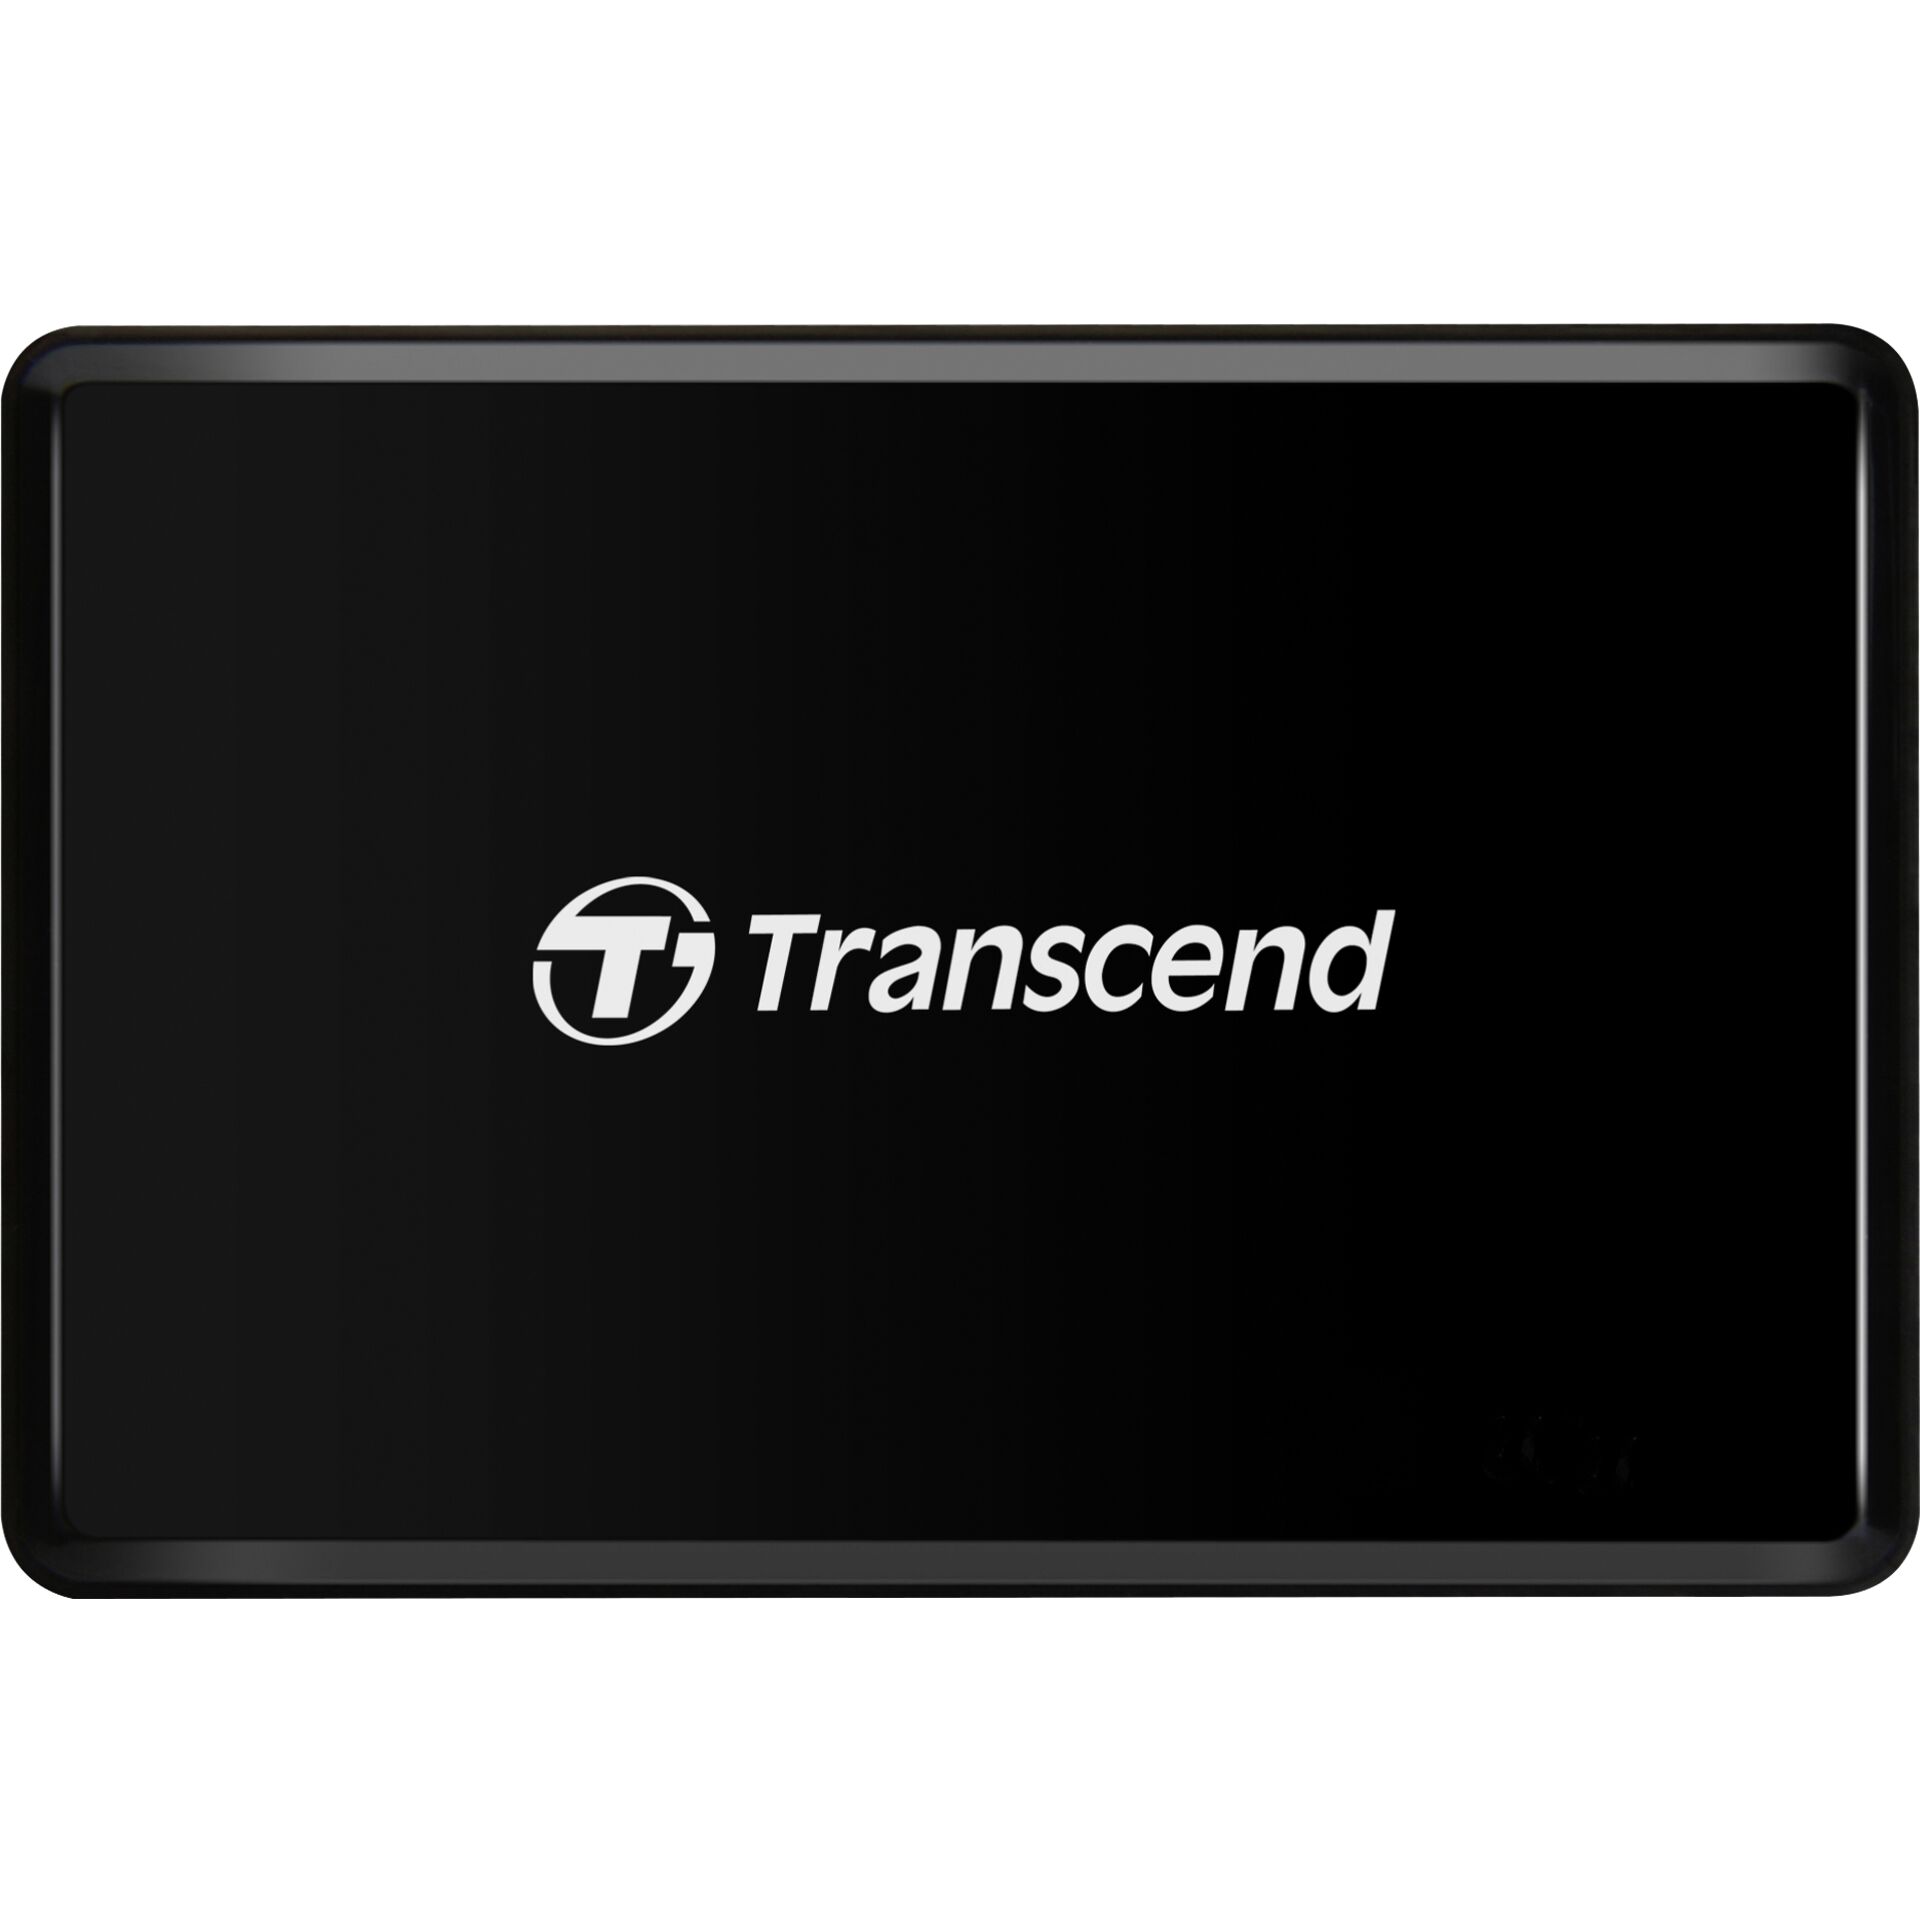 Transcend CFast 2.0 Cardreader RDF2, USB 3.0 